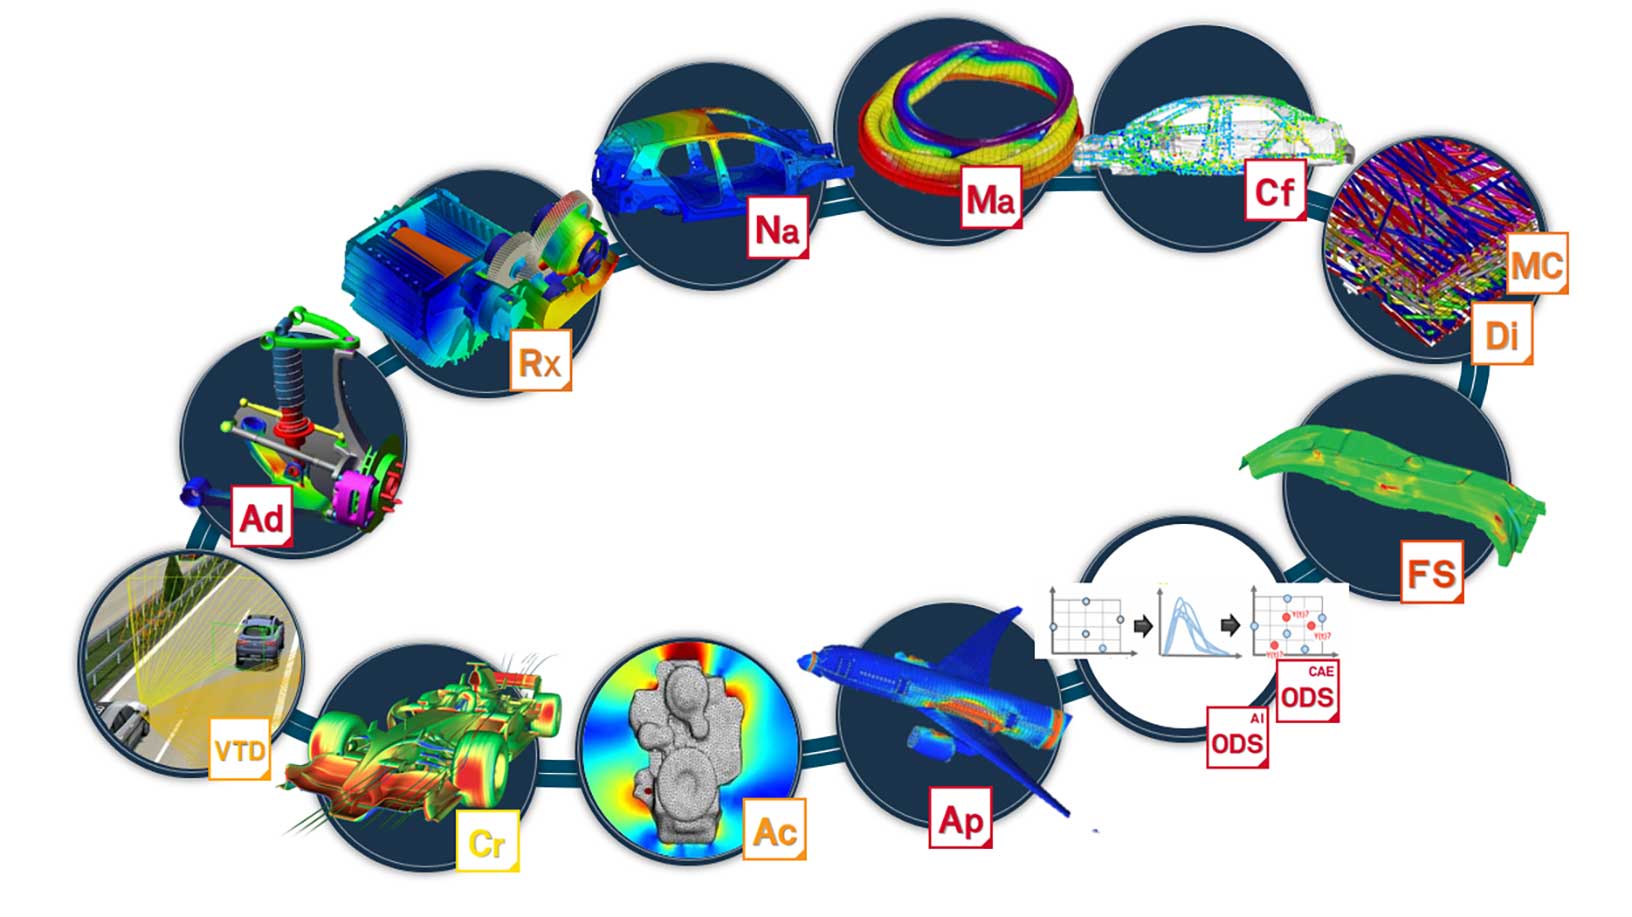 Portfólio completo da simulação multifísica CAE da Hexagon